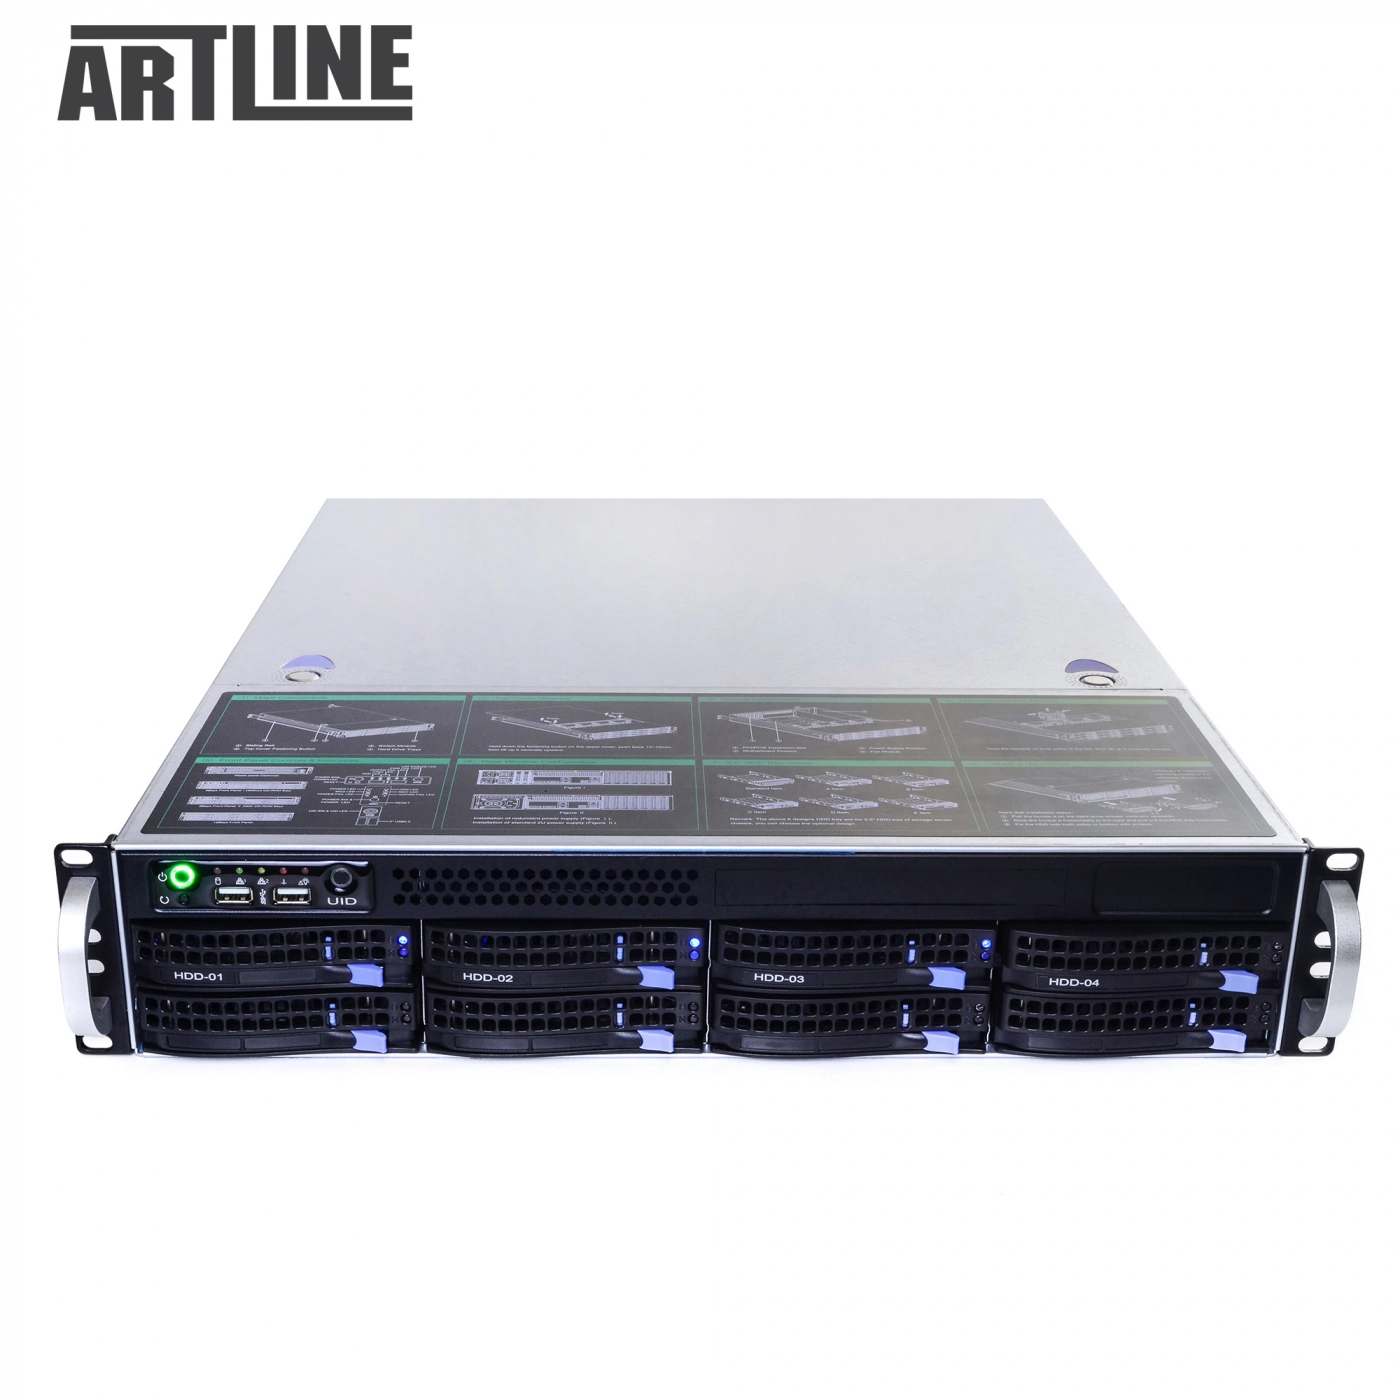 Купить Сервер ARTLINE Business R39v02 - фото 10